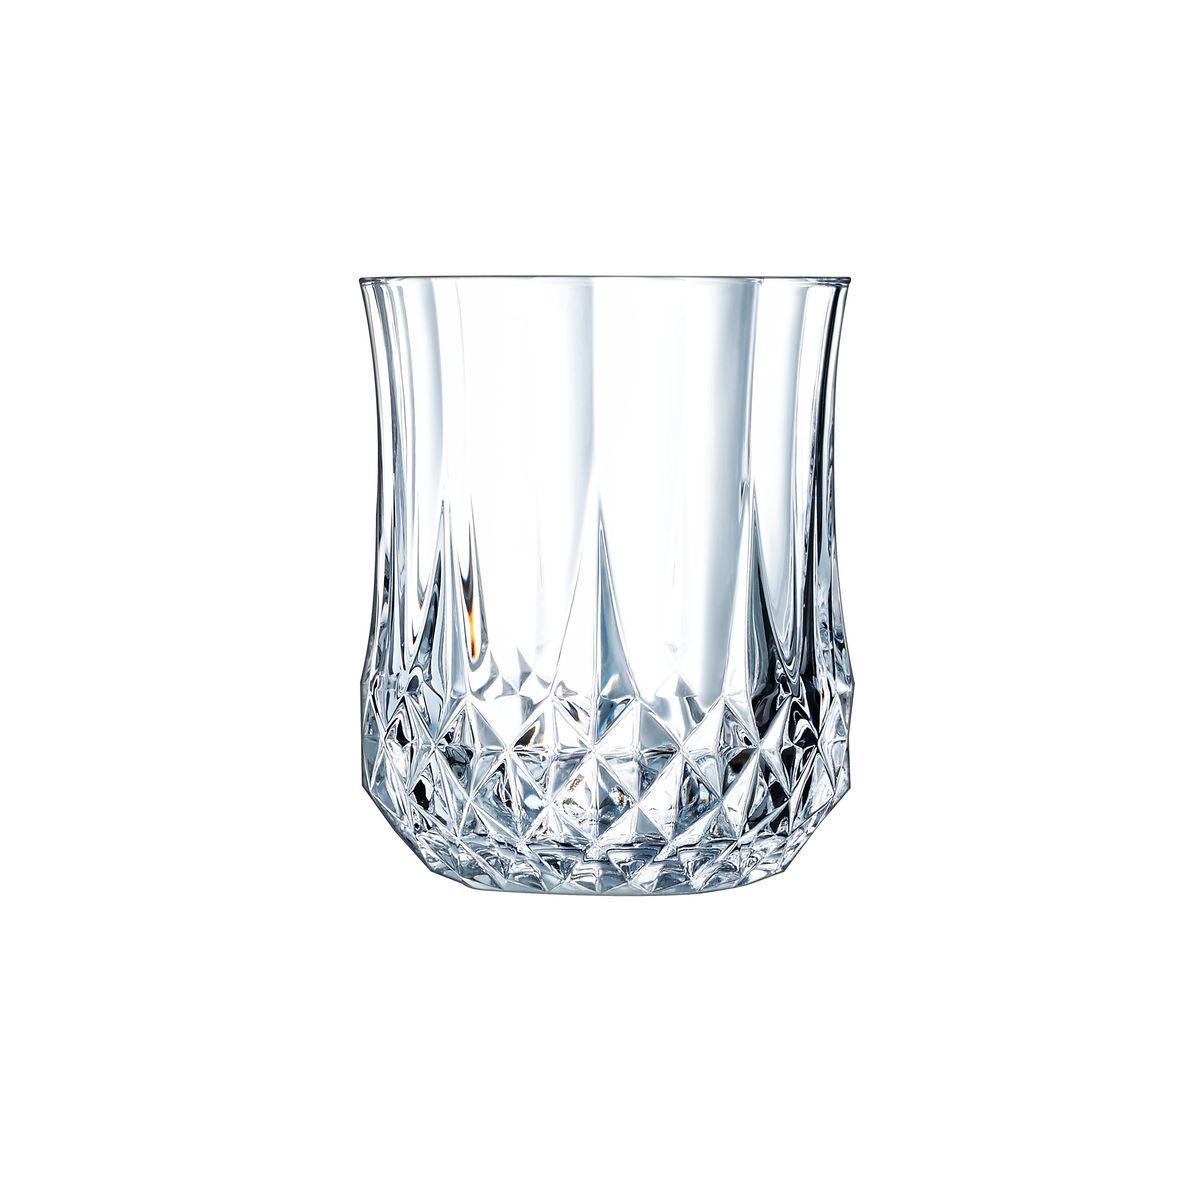 6 verres à eau vintage 23cl Longchamp - Cristal d'Arques - Verre ultra transparent au design vintage